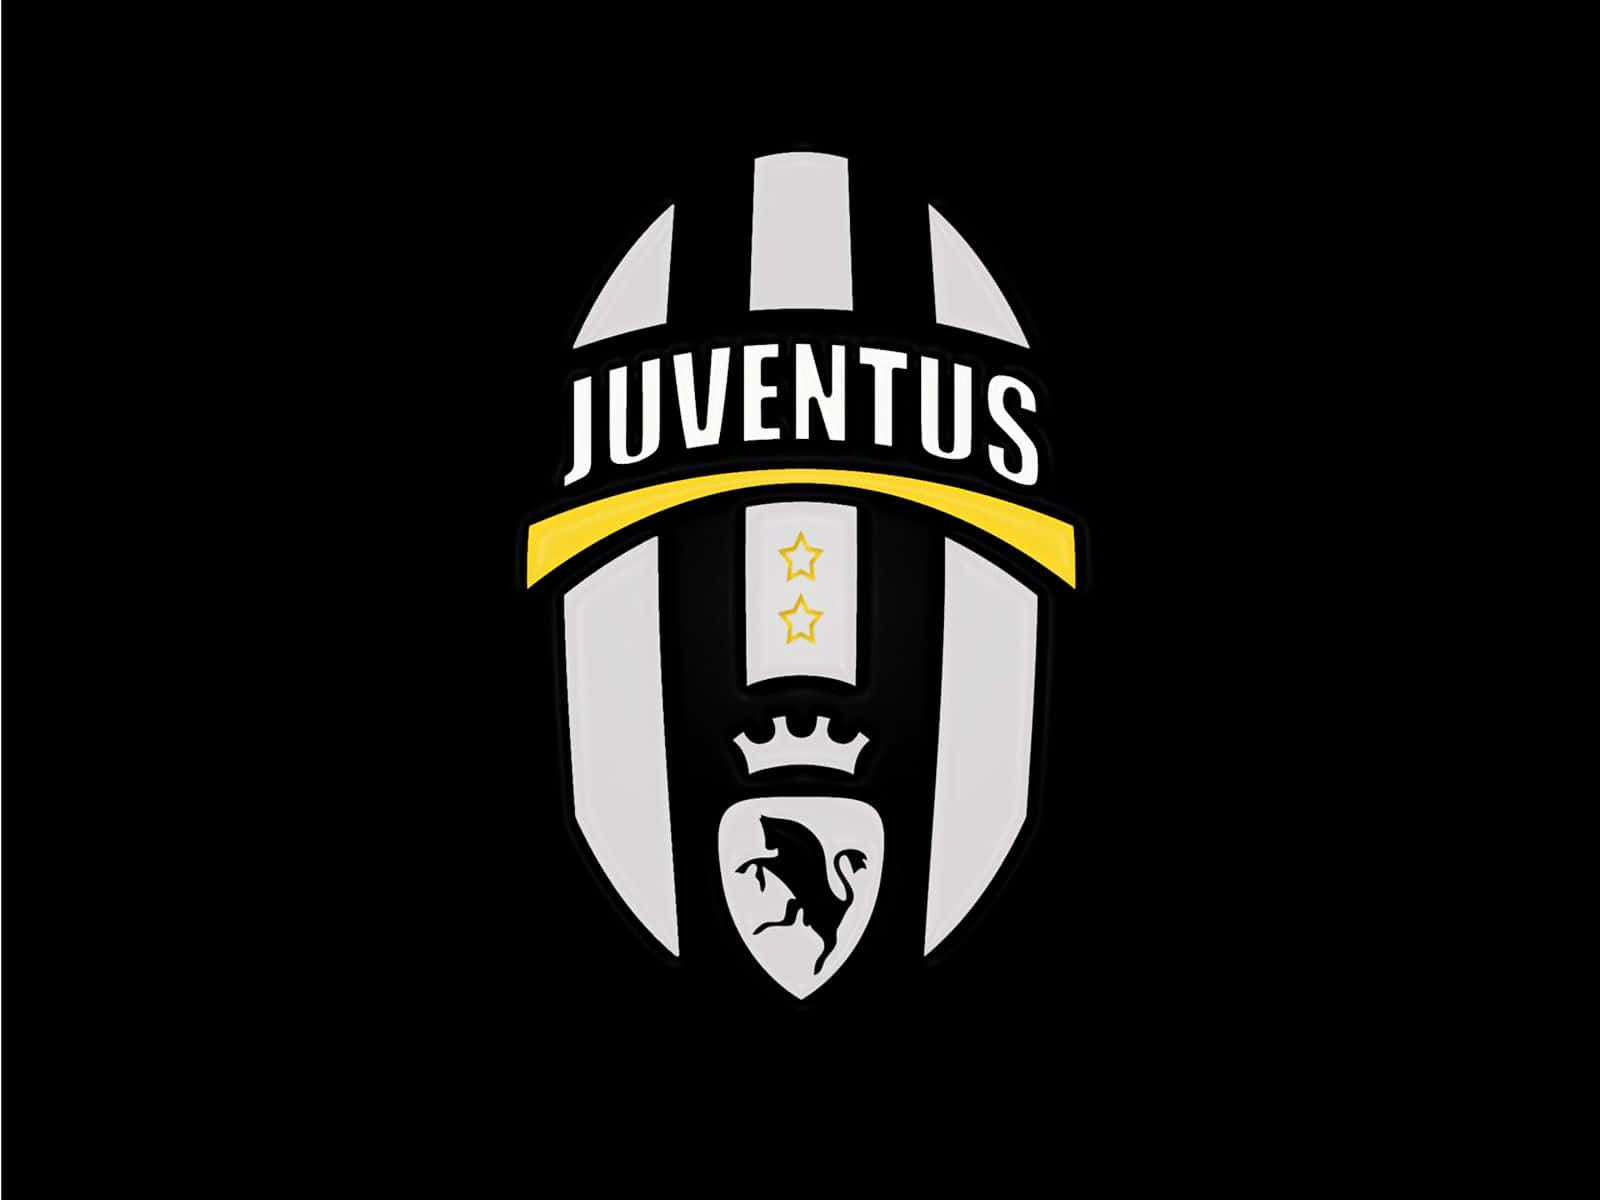 Daszeitlose Emblem Von Juventus Brennt Hell In Den Köpfen Der Fußballfans!